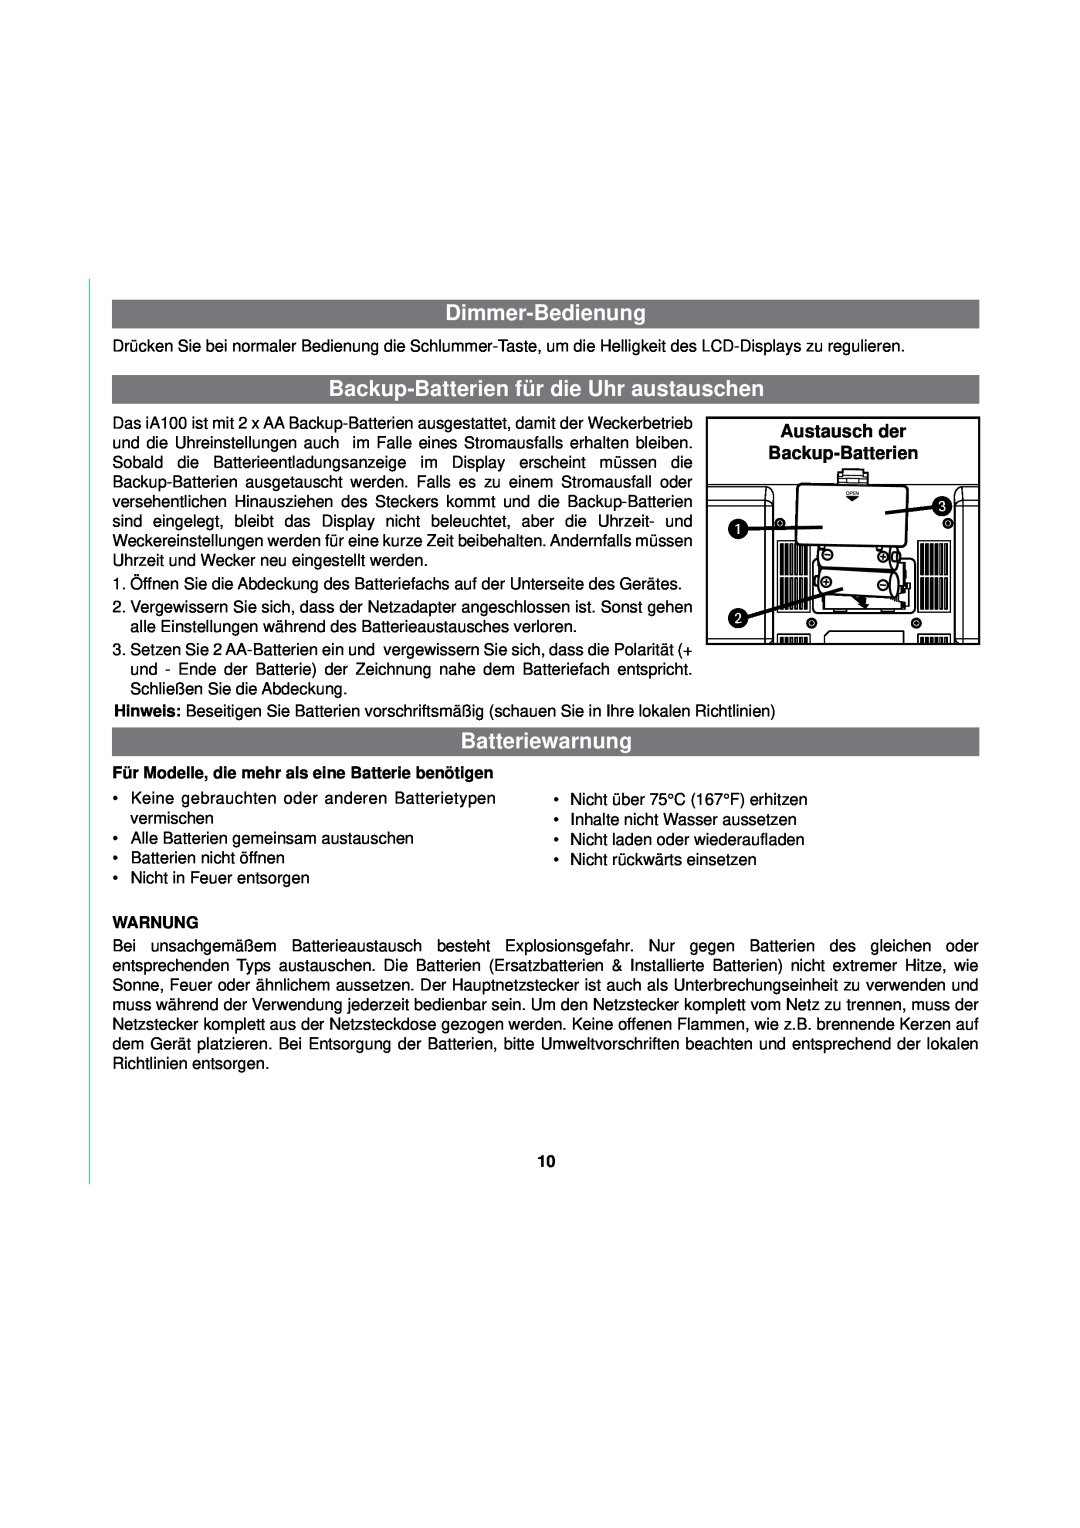 iHome iA100 manual Dimmer-Bedienung, Backup-Batterienfür die Uhr austauschen, Batteriewarnung, Warnung 